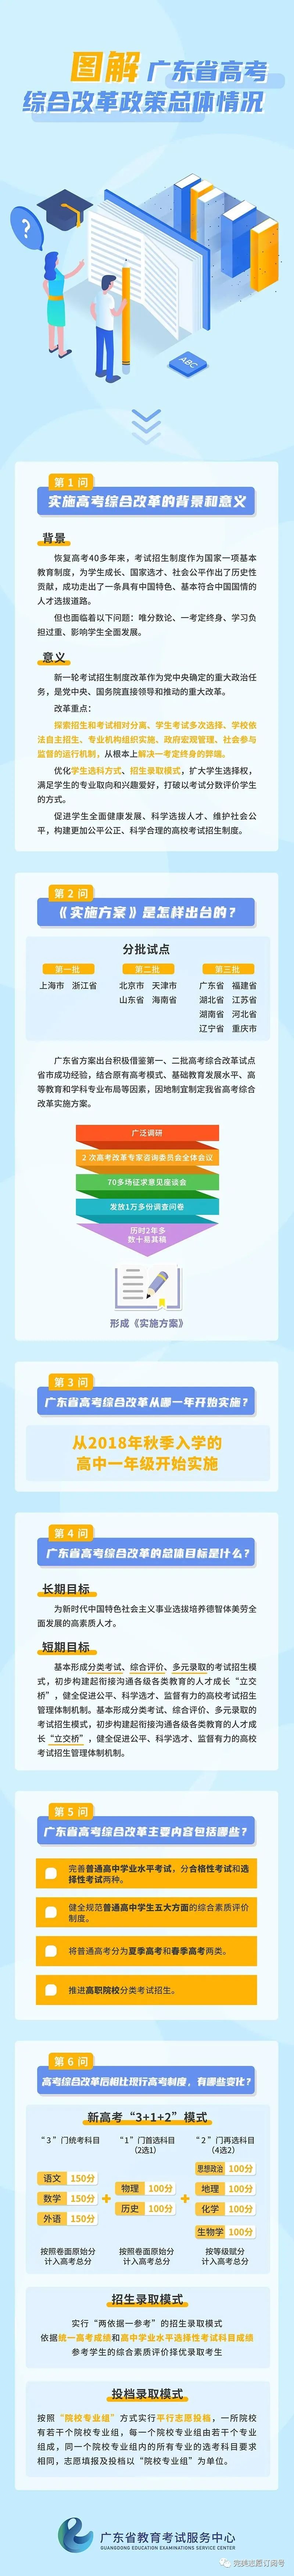 政策解读丨图解广东省高考综合改革政策总体情况